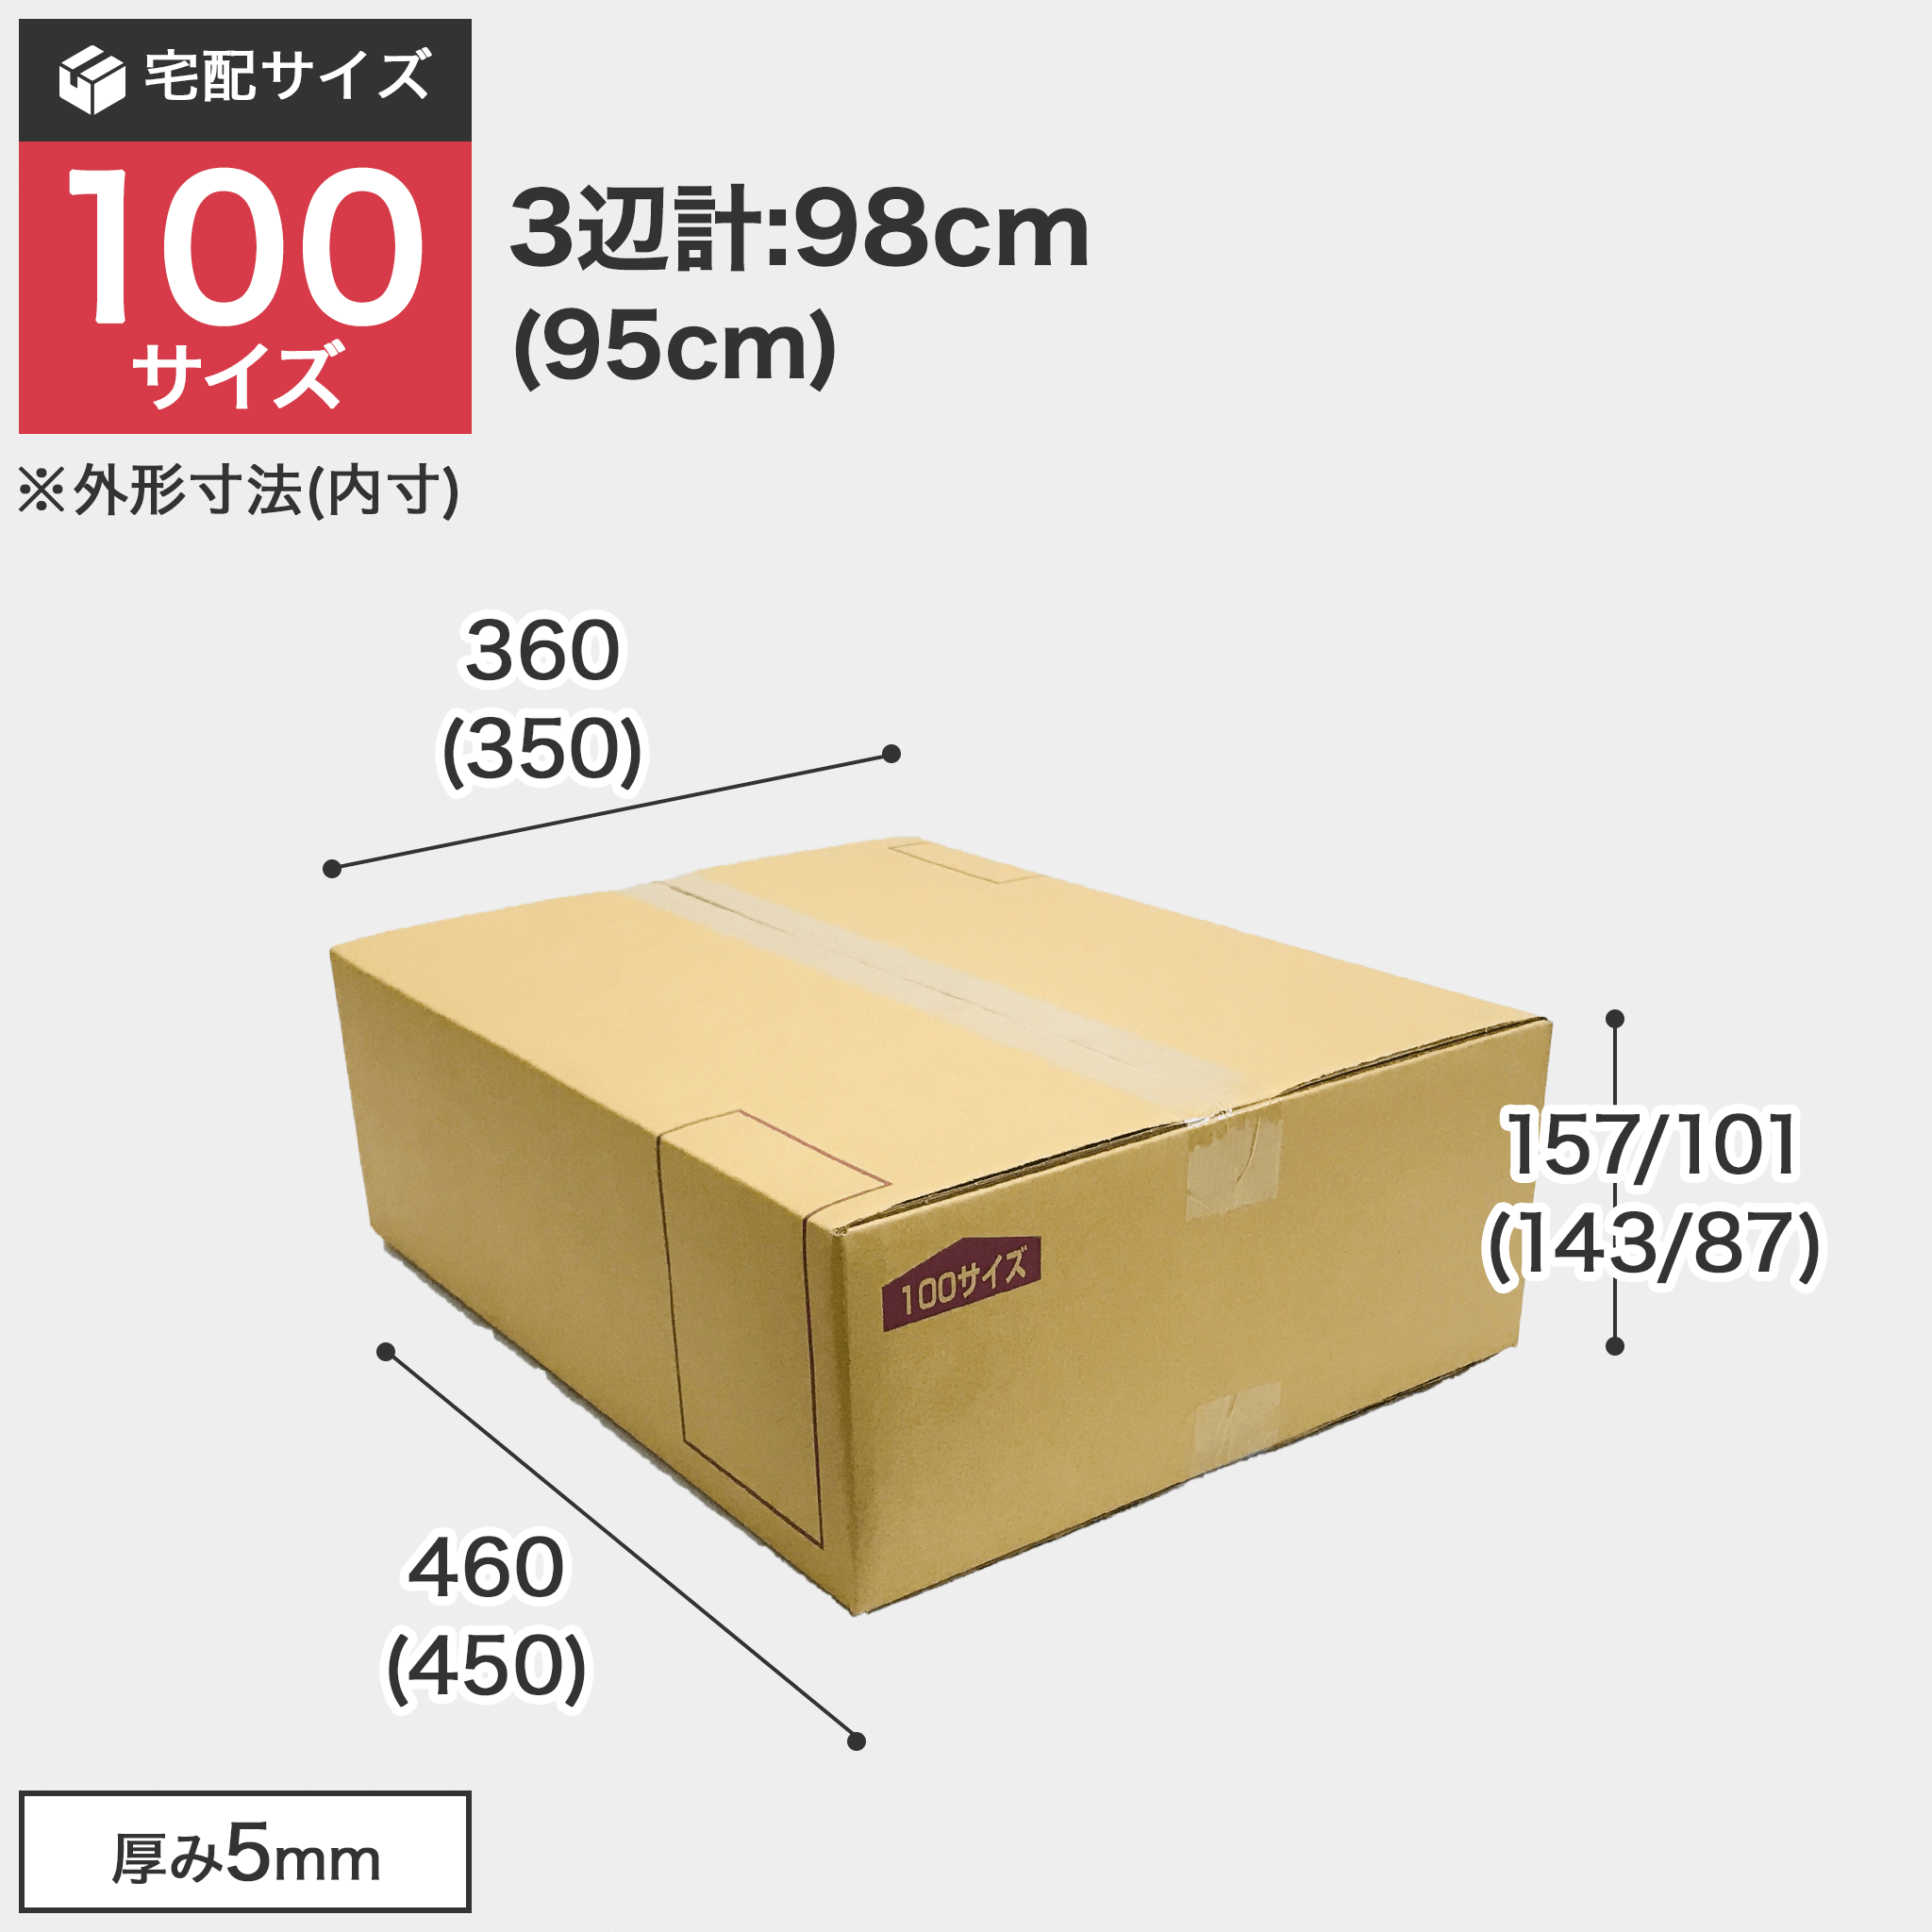 宅配100サイズのダンボール箱 3辺合計約98cm 宅配100サイズのダンボール箱ですが、罫線まで裁ち下げるとコンパクトになります。